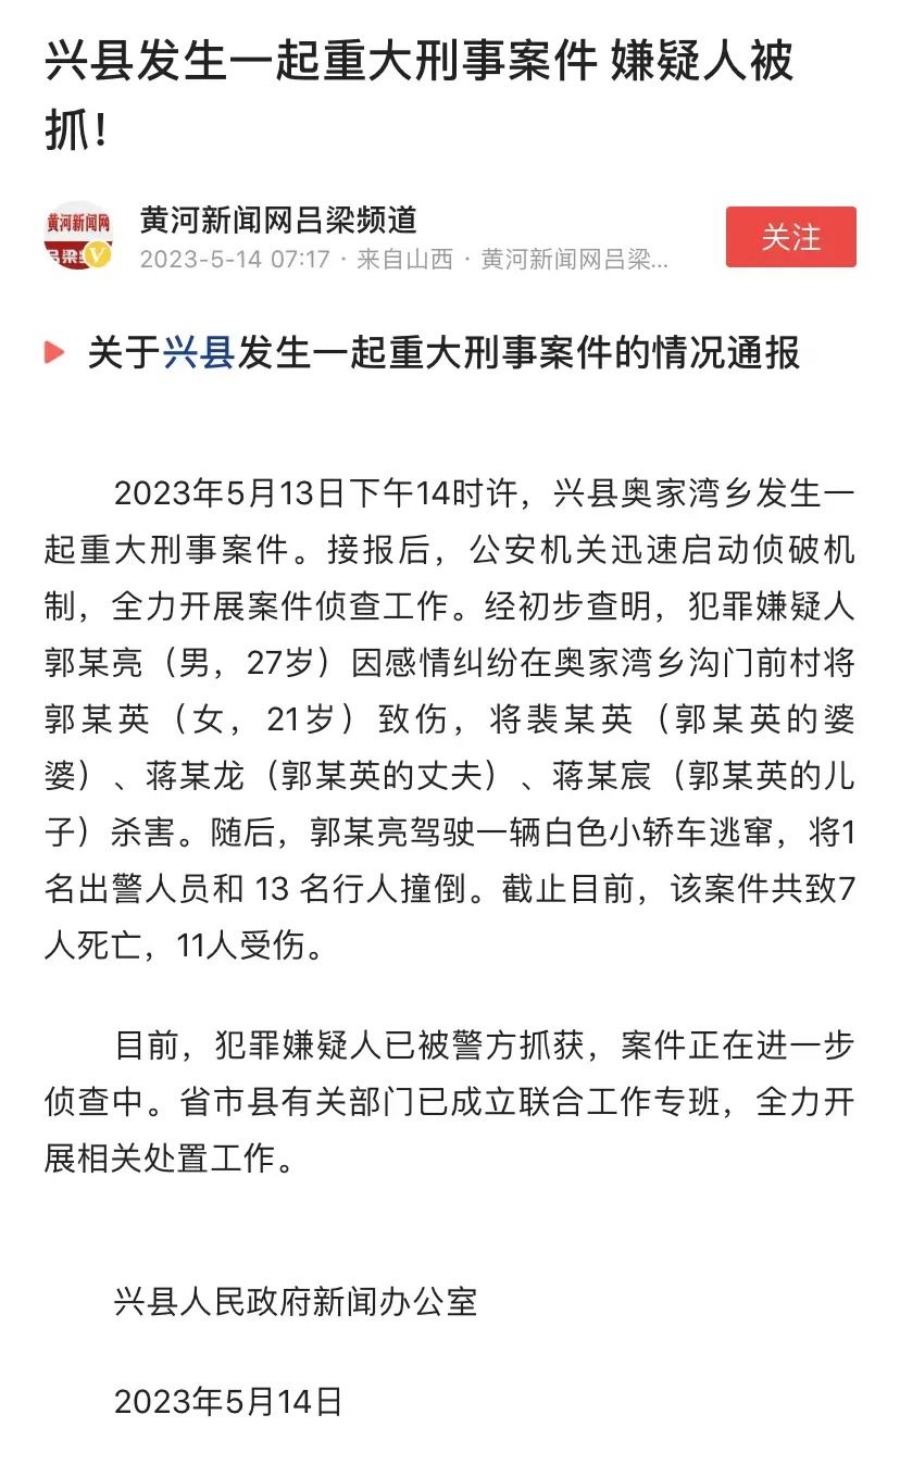 兴县人民政府新闻办公室发出通告。